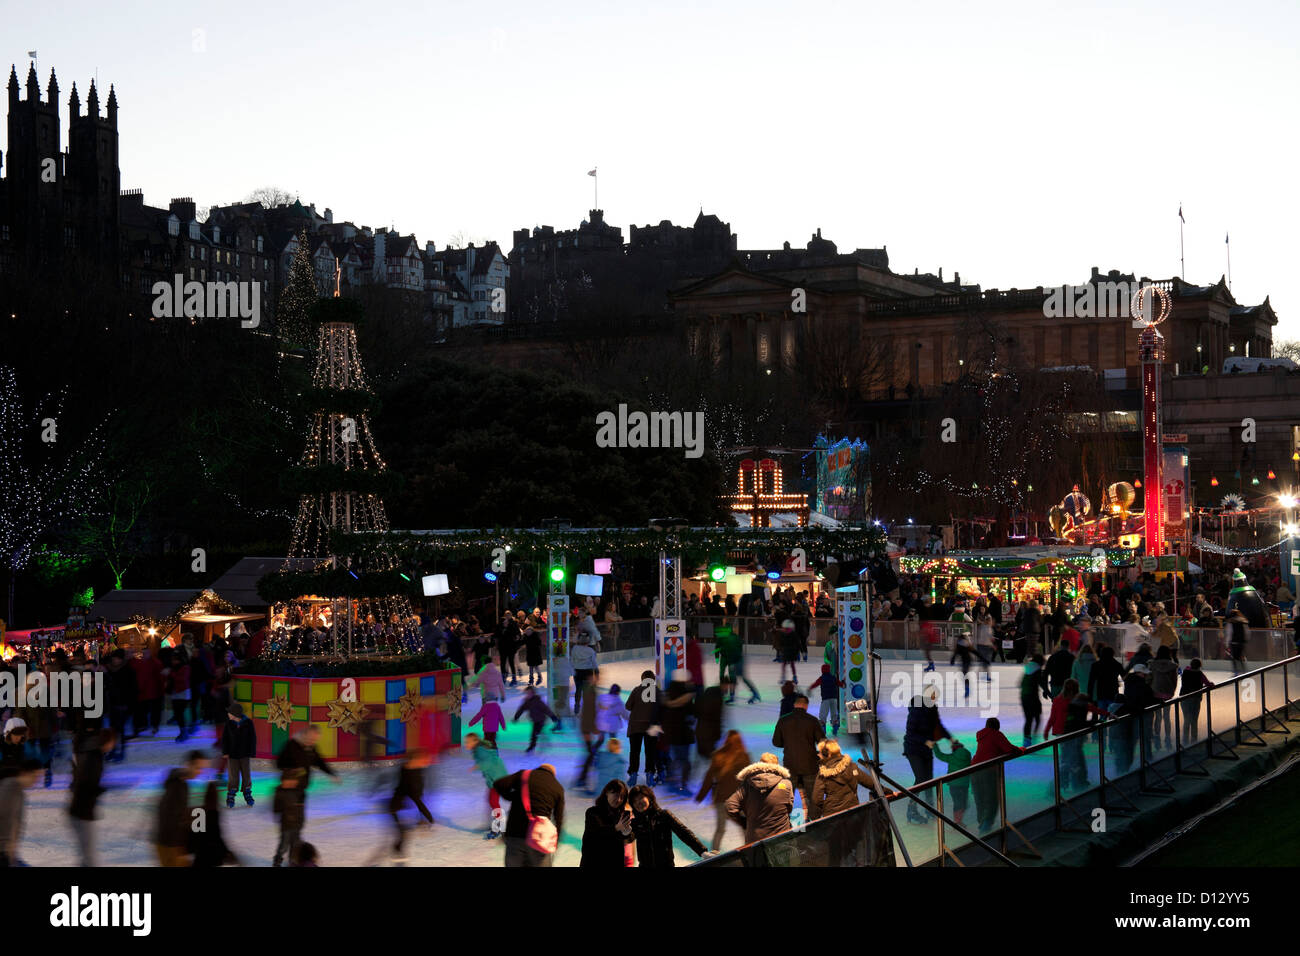 Edinburgh-Weihnachten-Eisbahn, Stadtzentrum, Schottland, UK, Europa Stockfoto